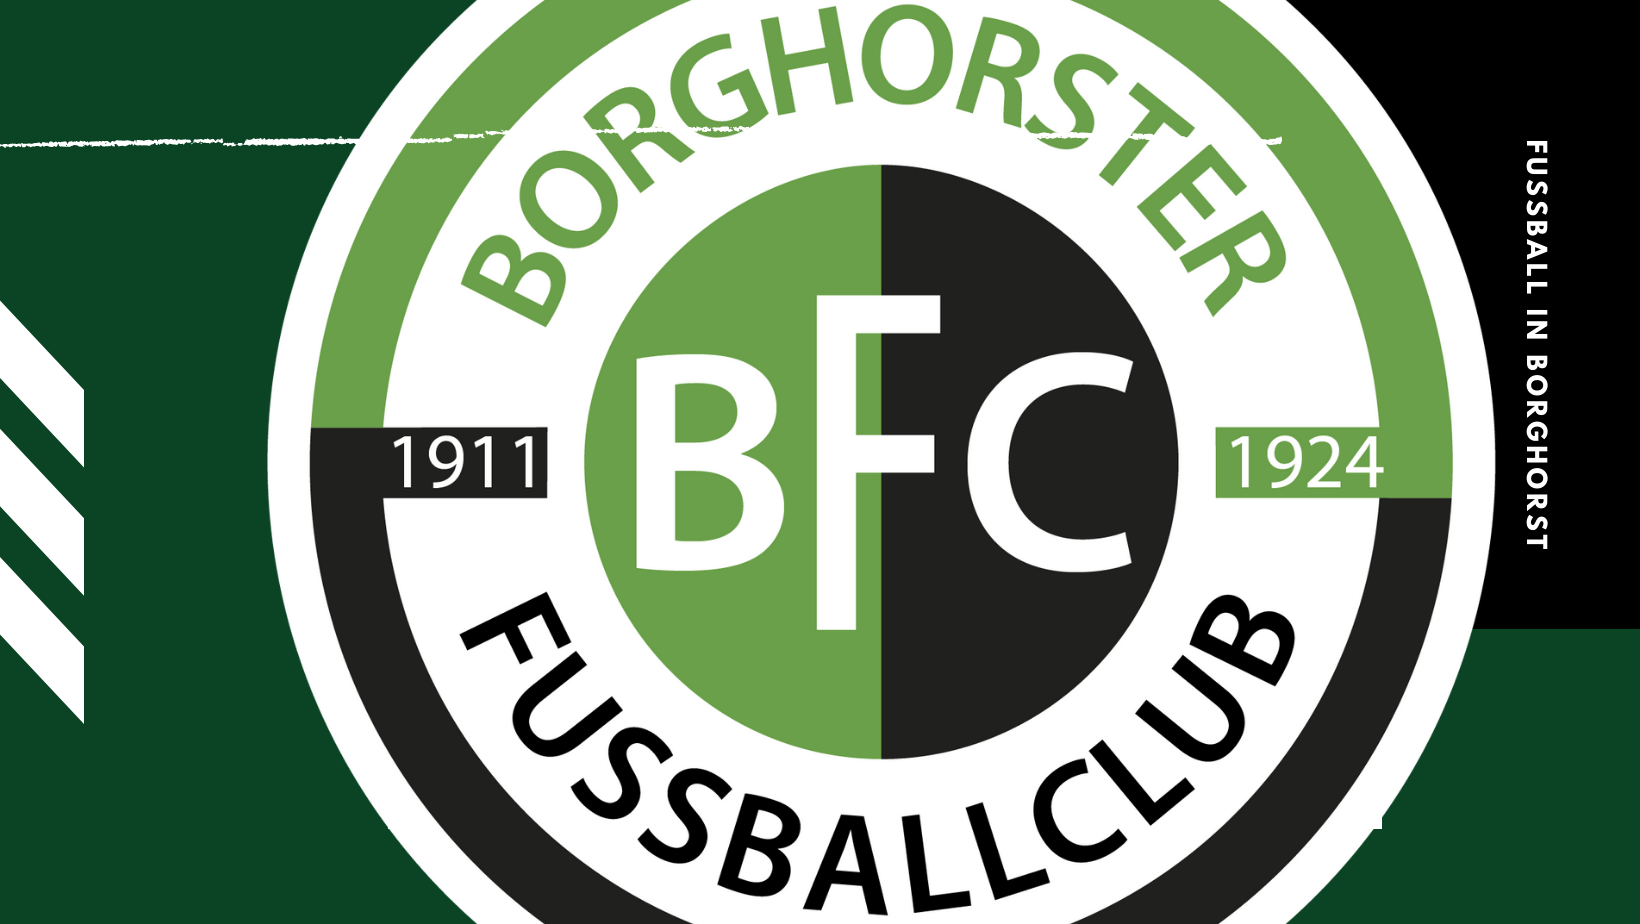 Organigramm | Borghorster FC 1911/1924 e.V.